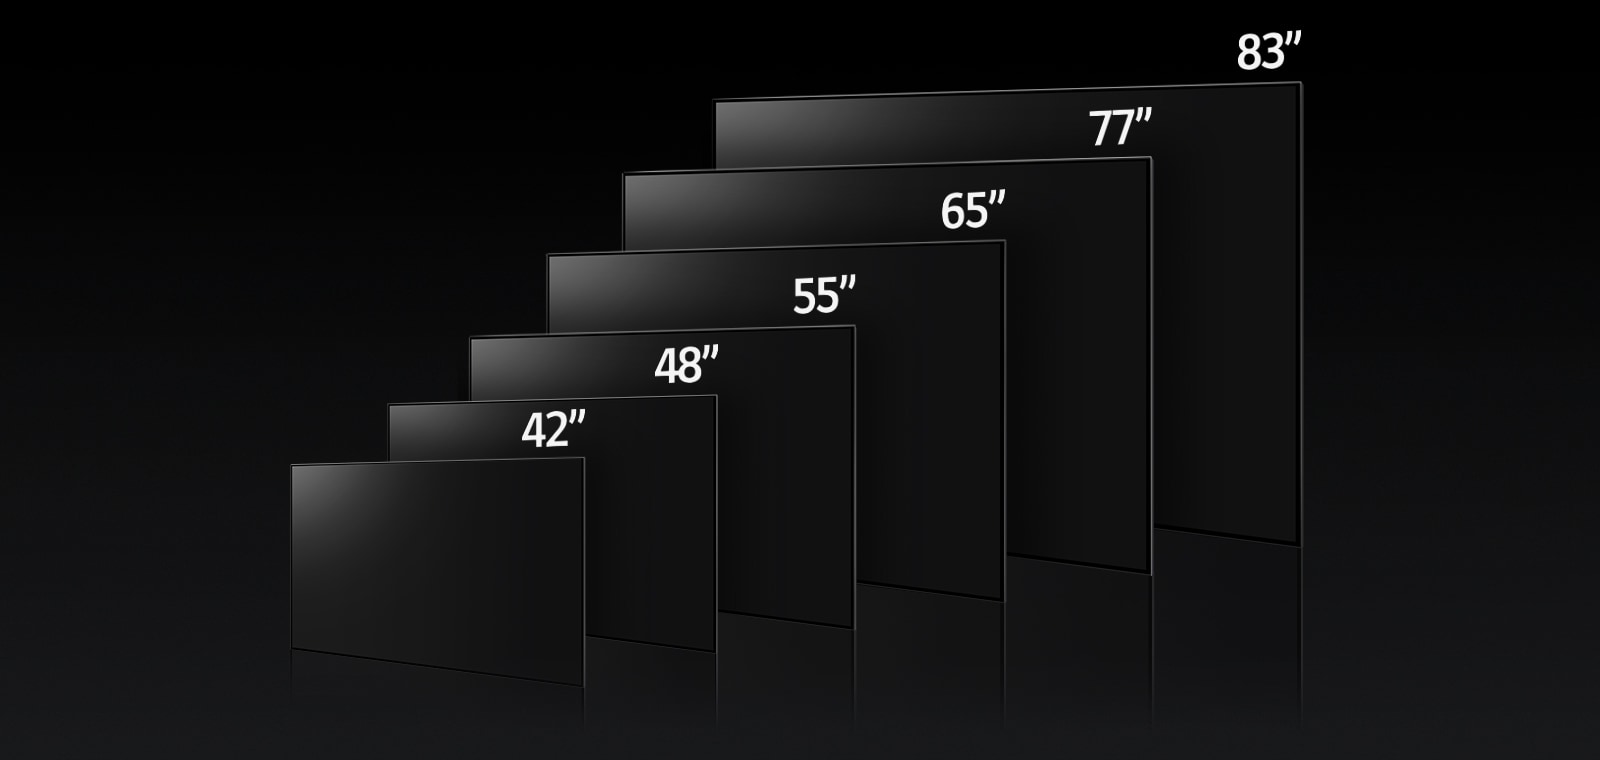 Μια εικόνα που συγκρίνει τις διαφορετικές διαστάσεις της LG OLED C3, δείχνοντας τα μοντέλα 42", 48", 55", 65", 77" και 83".